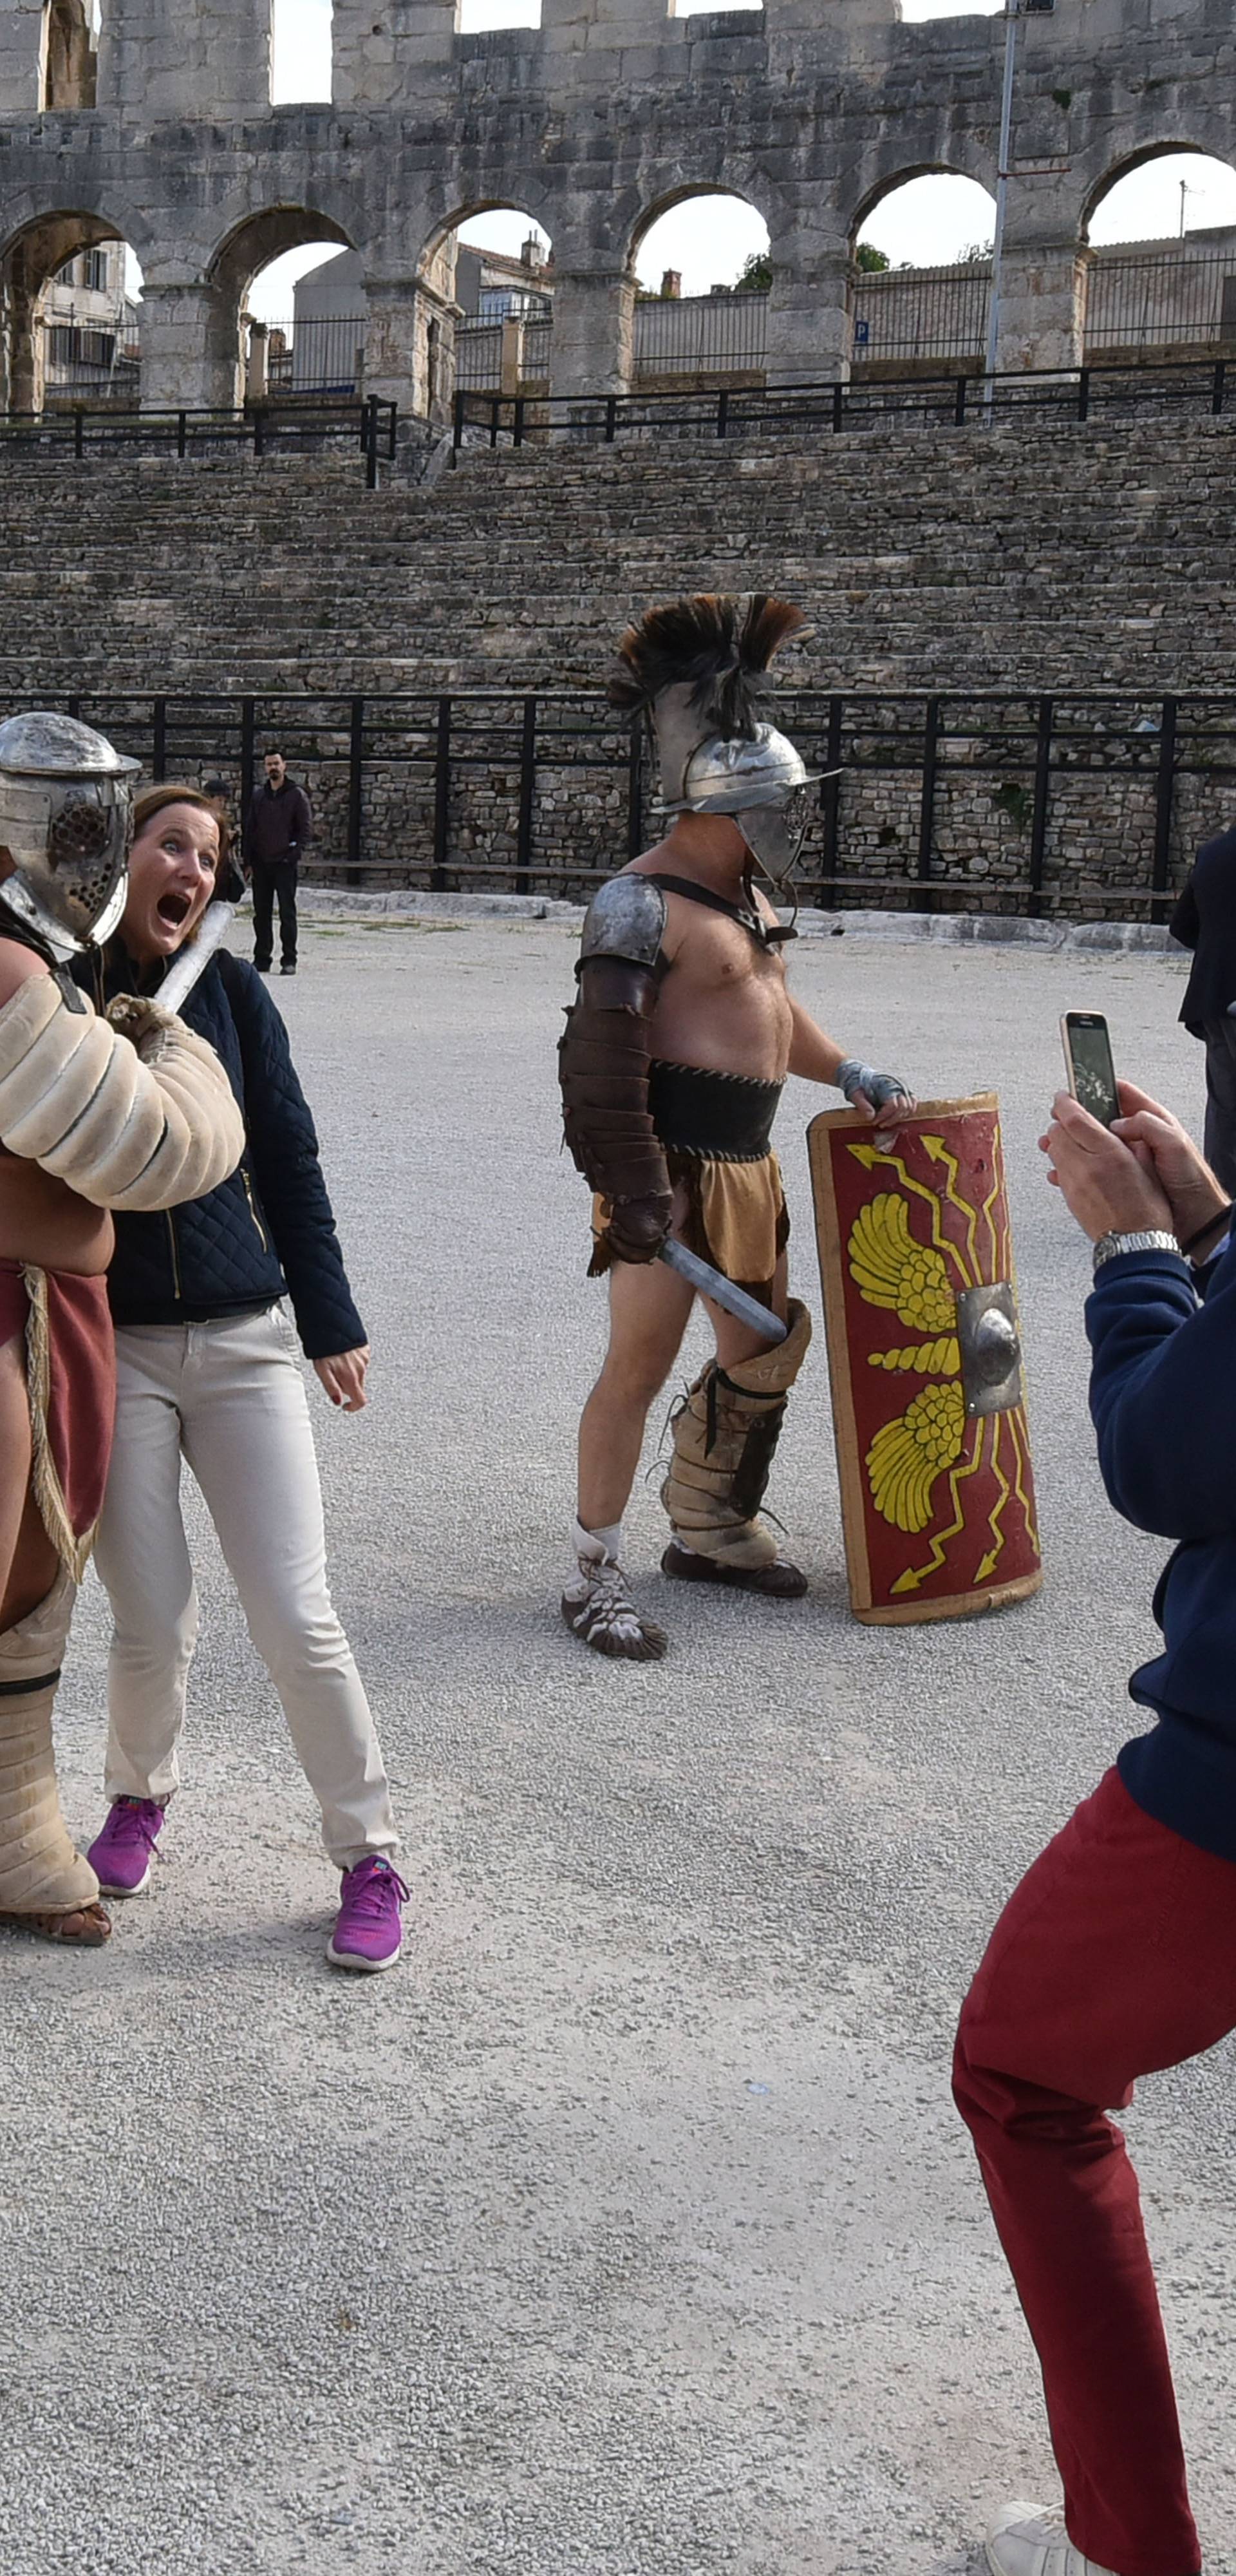 Gladijatori su opet u Areni, ali sada se bore s diplomatima